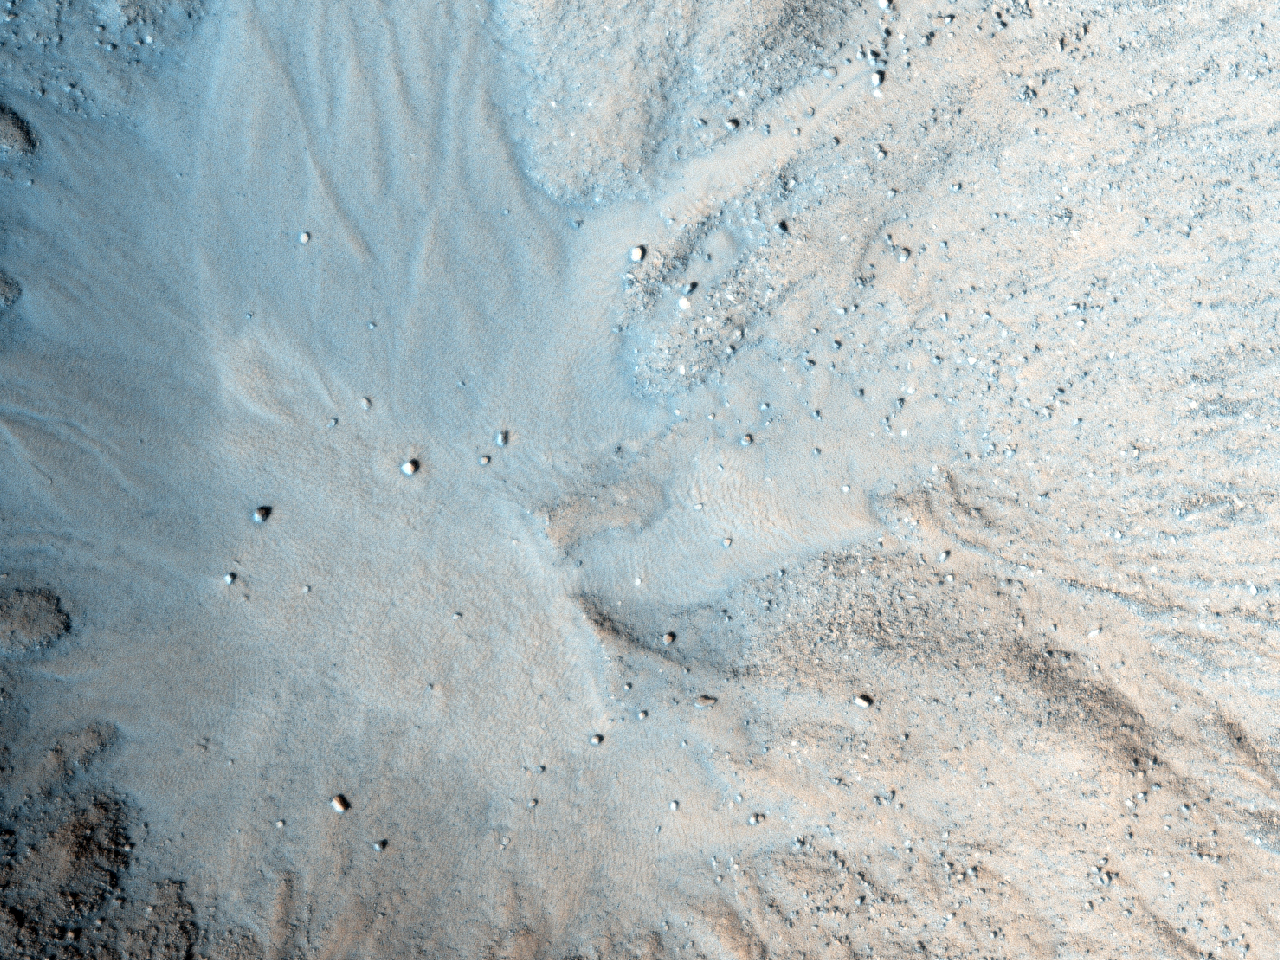 Cratere recente con pendii ripidi